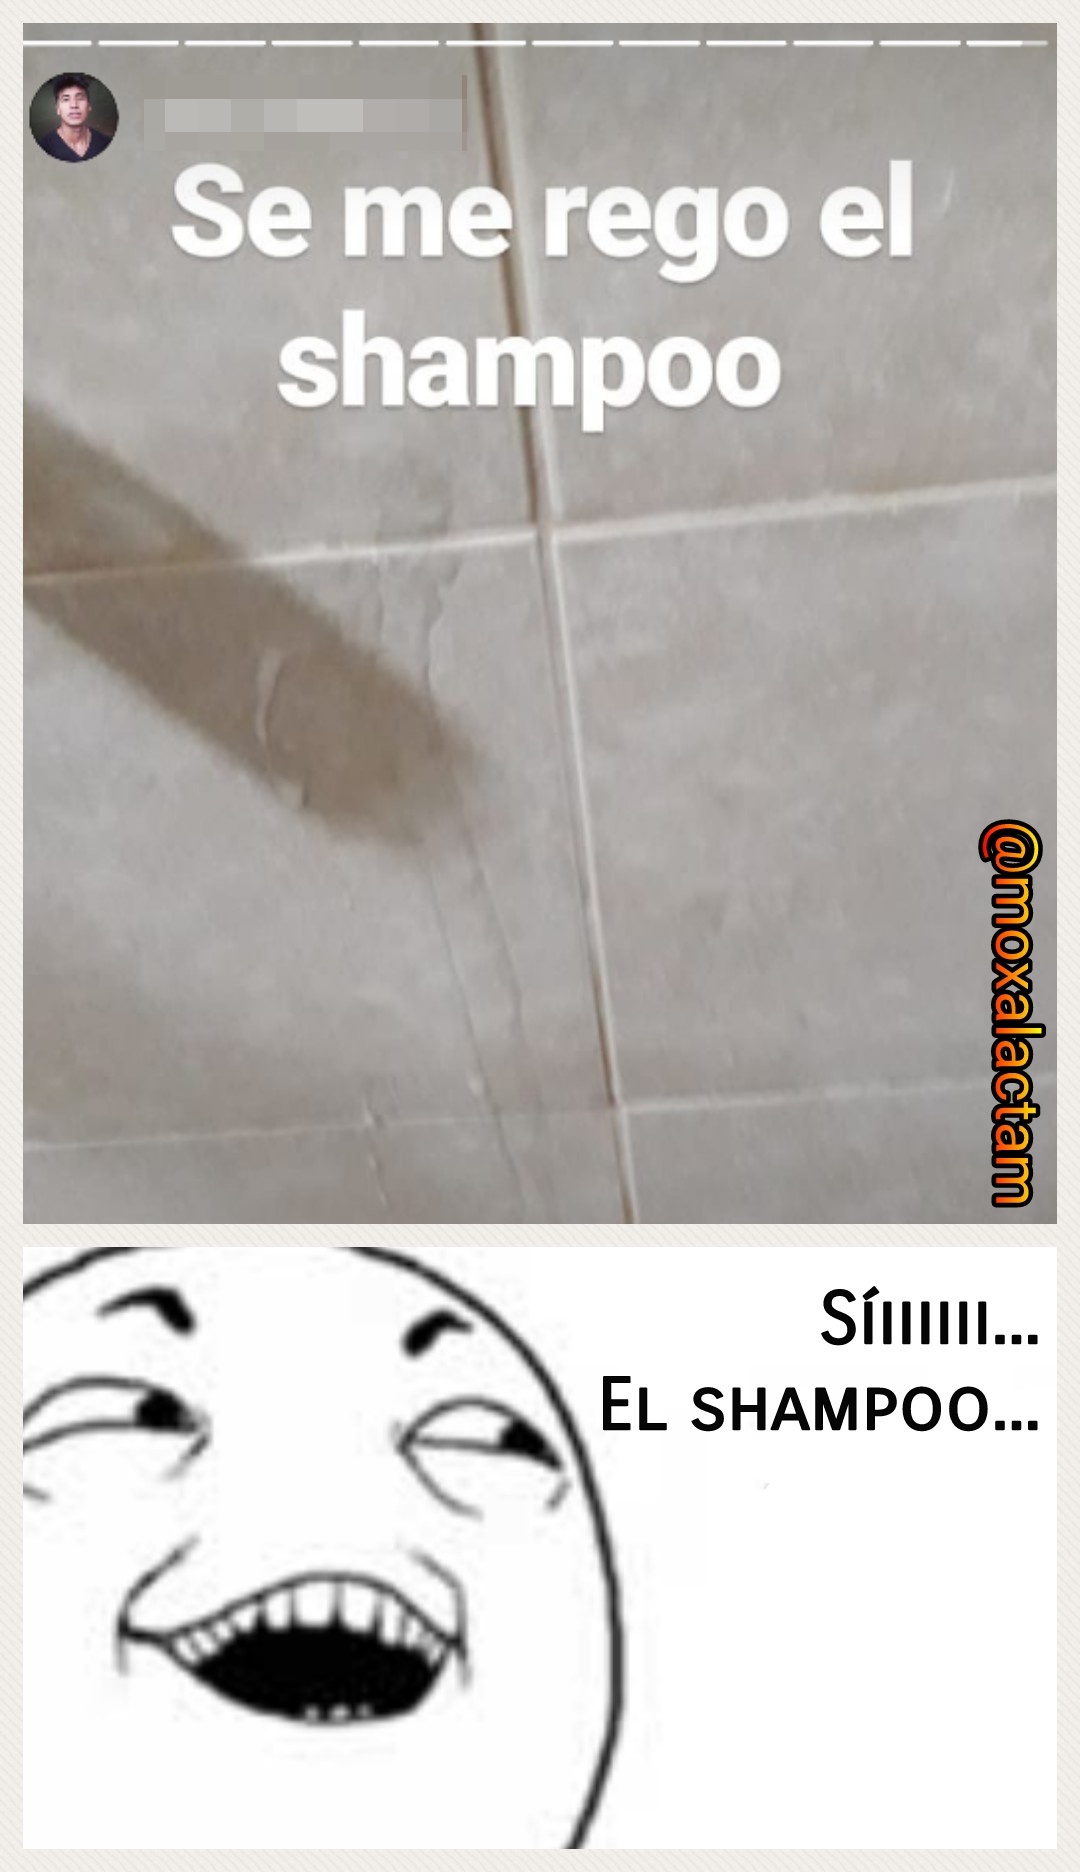 Cuida el shampoo - meme